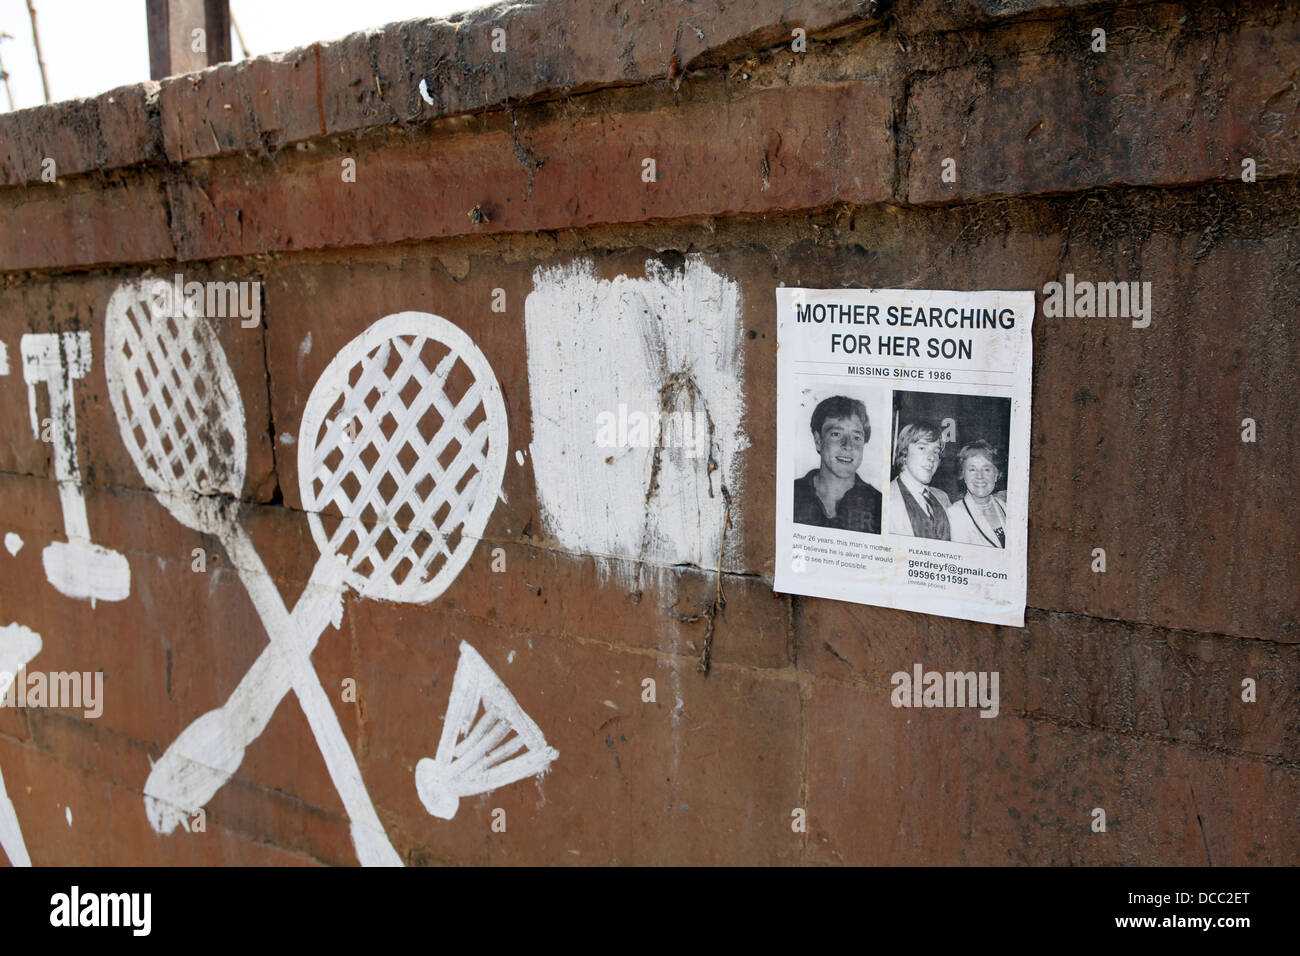 Une personne disparue signe est collé à un mur à Varanasi Inde Banque D'Images